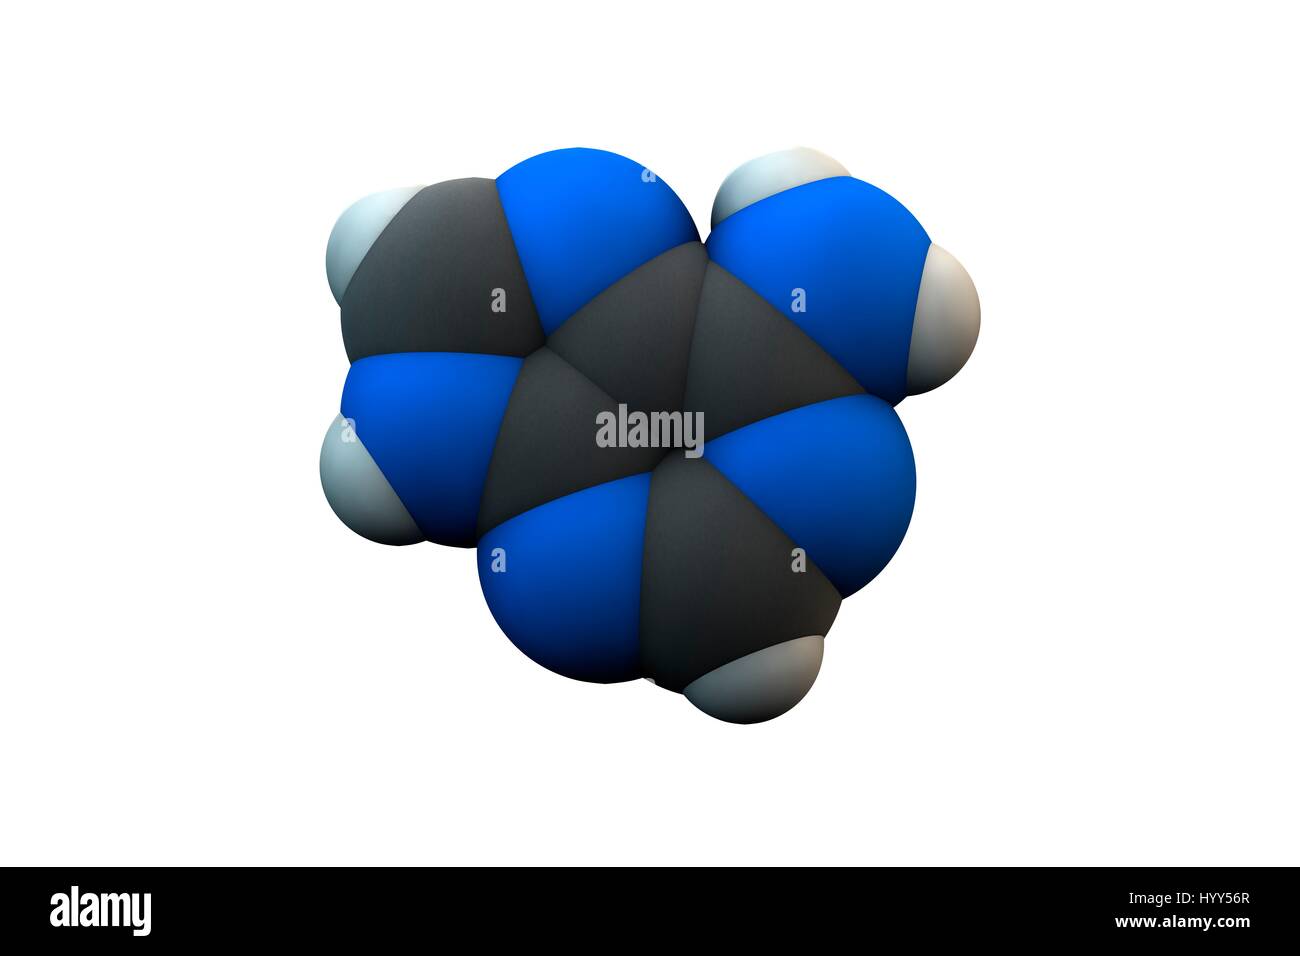 Adenin Purin Nucleobase Molekül. Chemische Formel ist C5H5N5. Atome werden als Kugeln dargestellt: Kohlenstoff (grau), Wasserstoff (weiß), Stickstoff (blau). Abbildung. Stockfoto